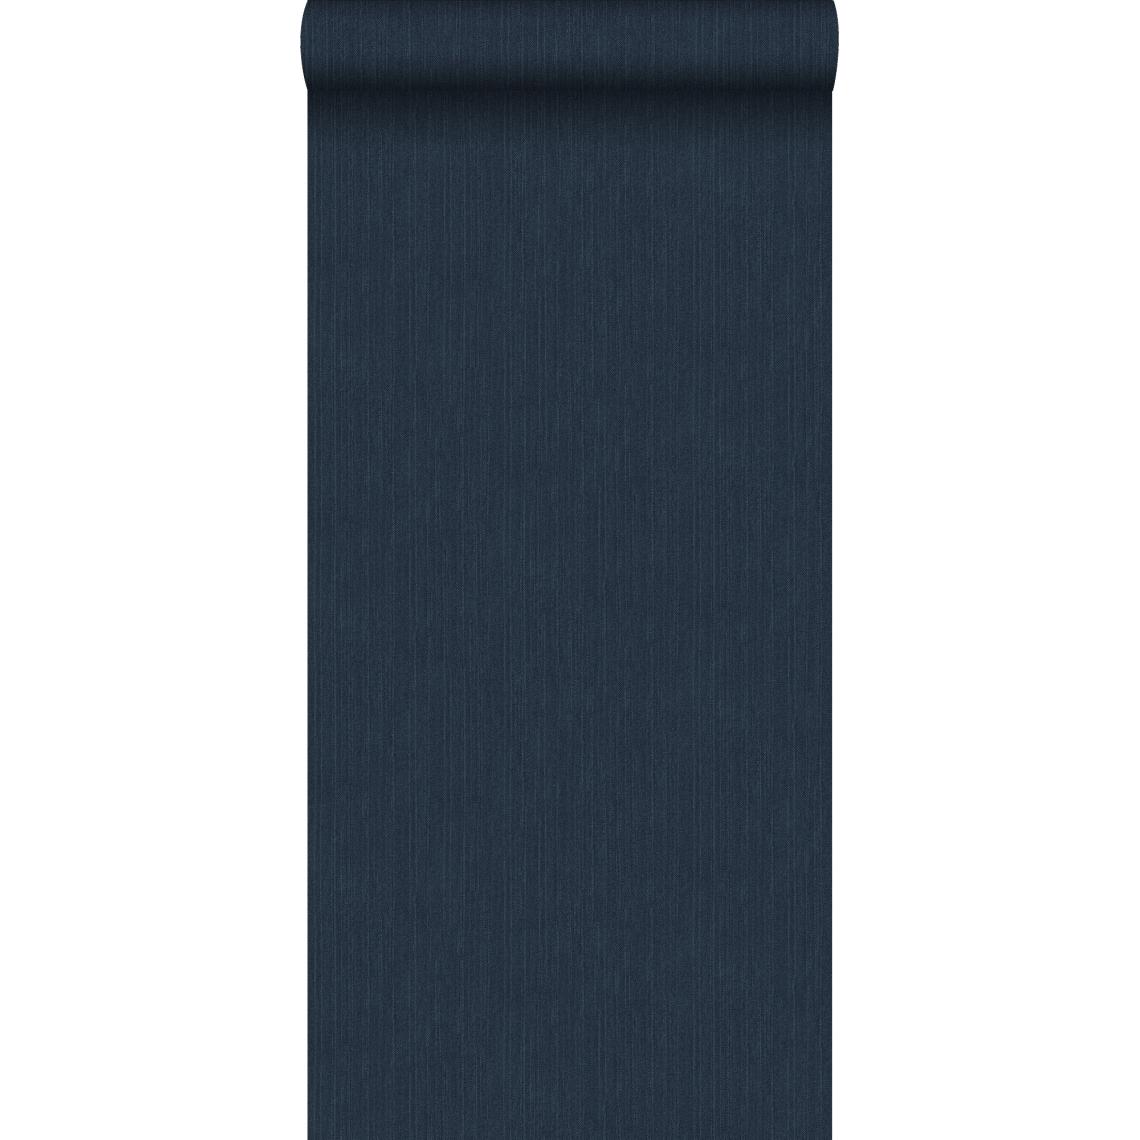 ESTAhome - ESTAhome papier peint uni avec structure en denim jeans bleu foncé - 148707 - 0.53 x 10.05 m - Papier peint